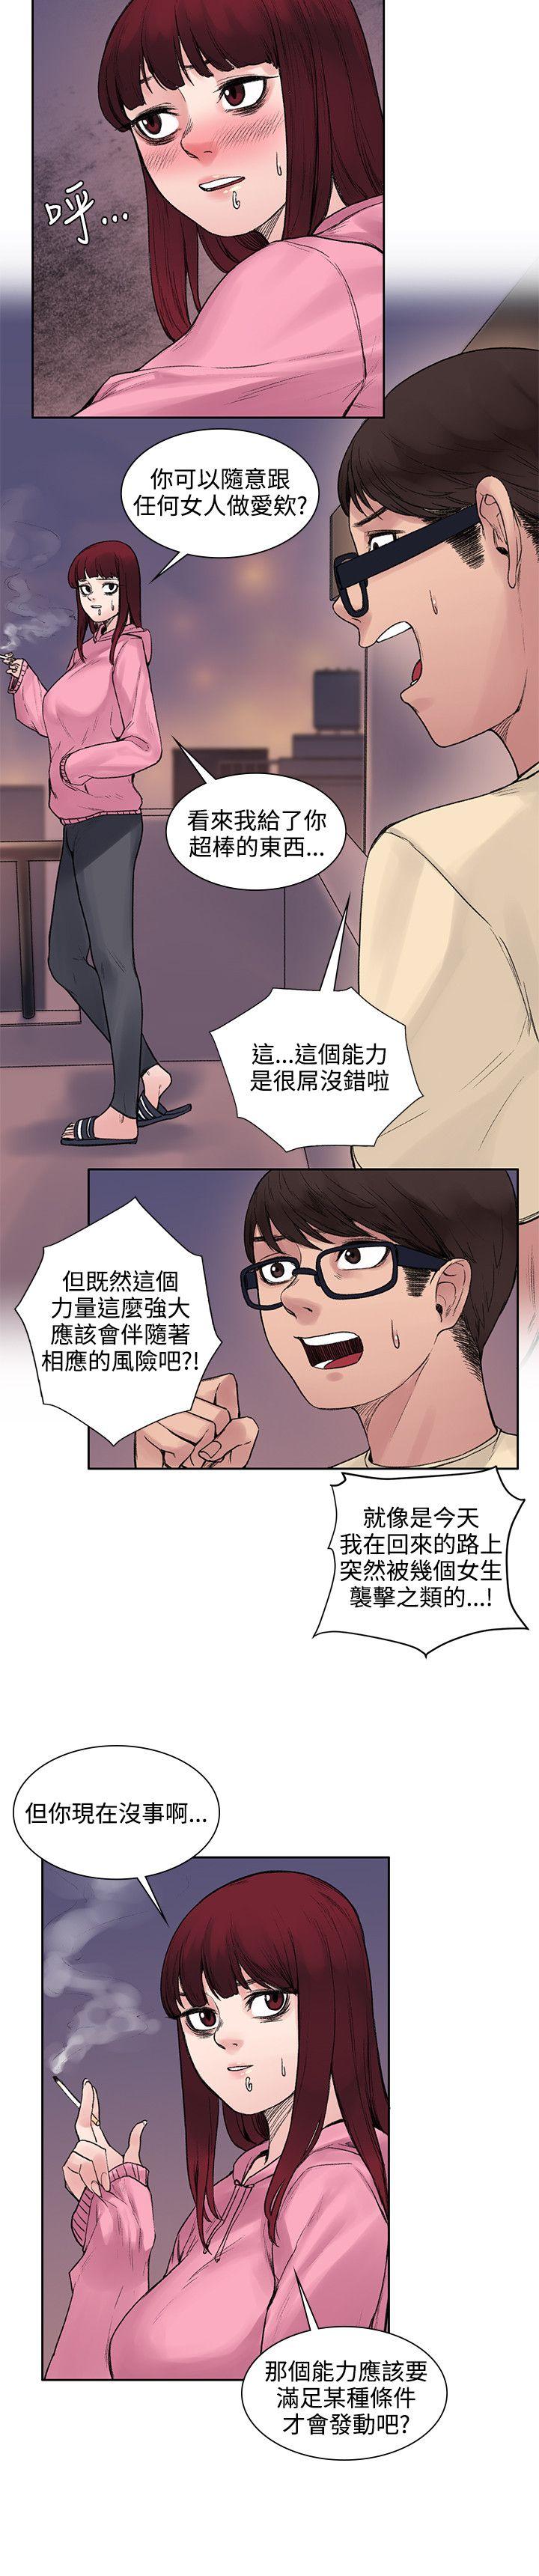 韩国污漫画 那裡的香氣 第12话 15